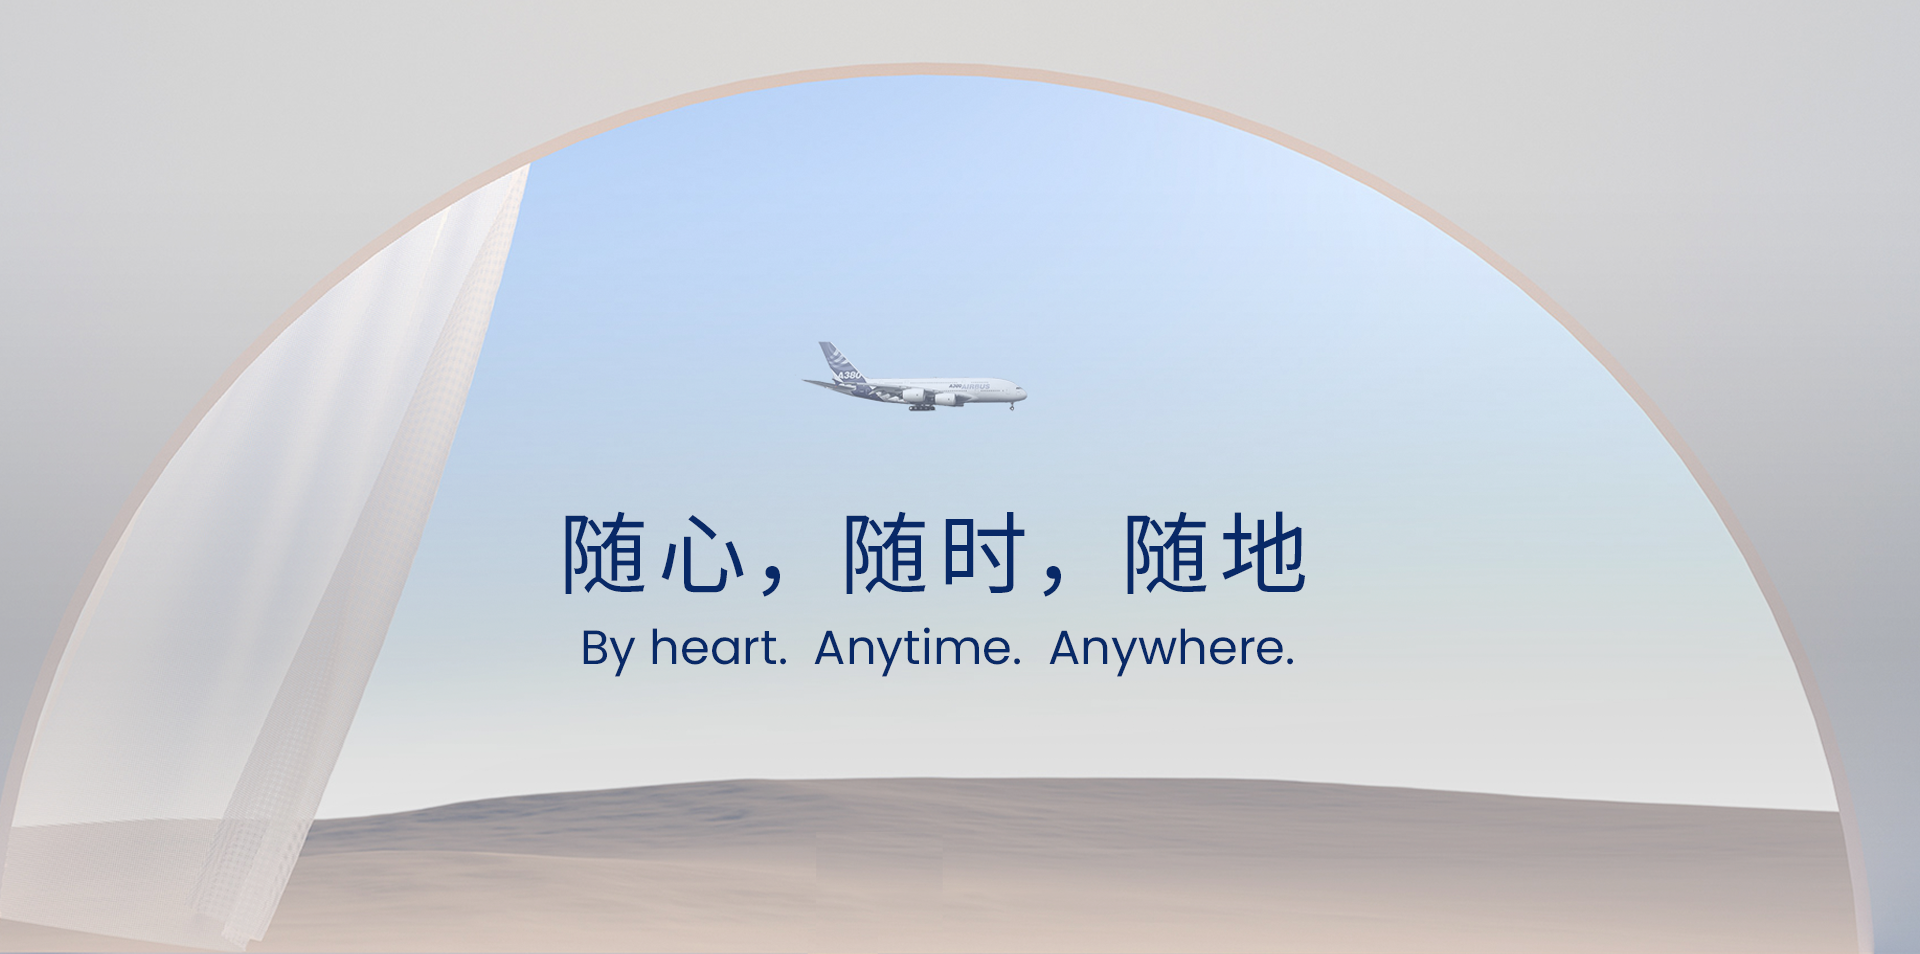 亚联公务机banner1